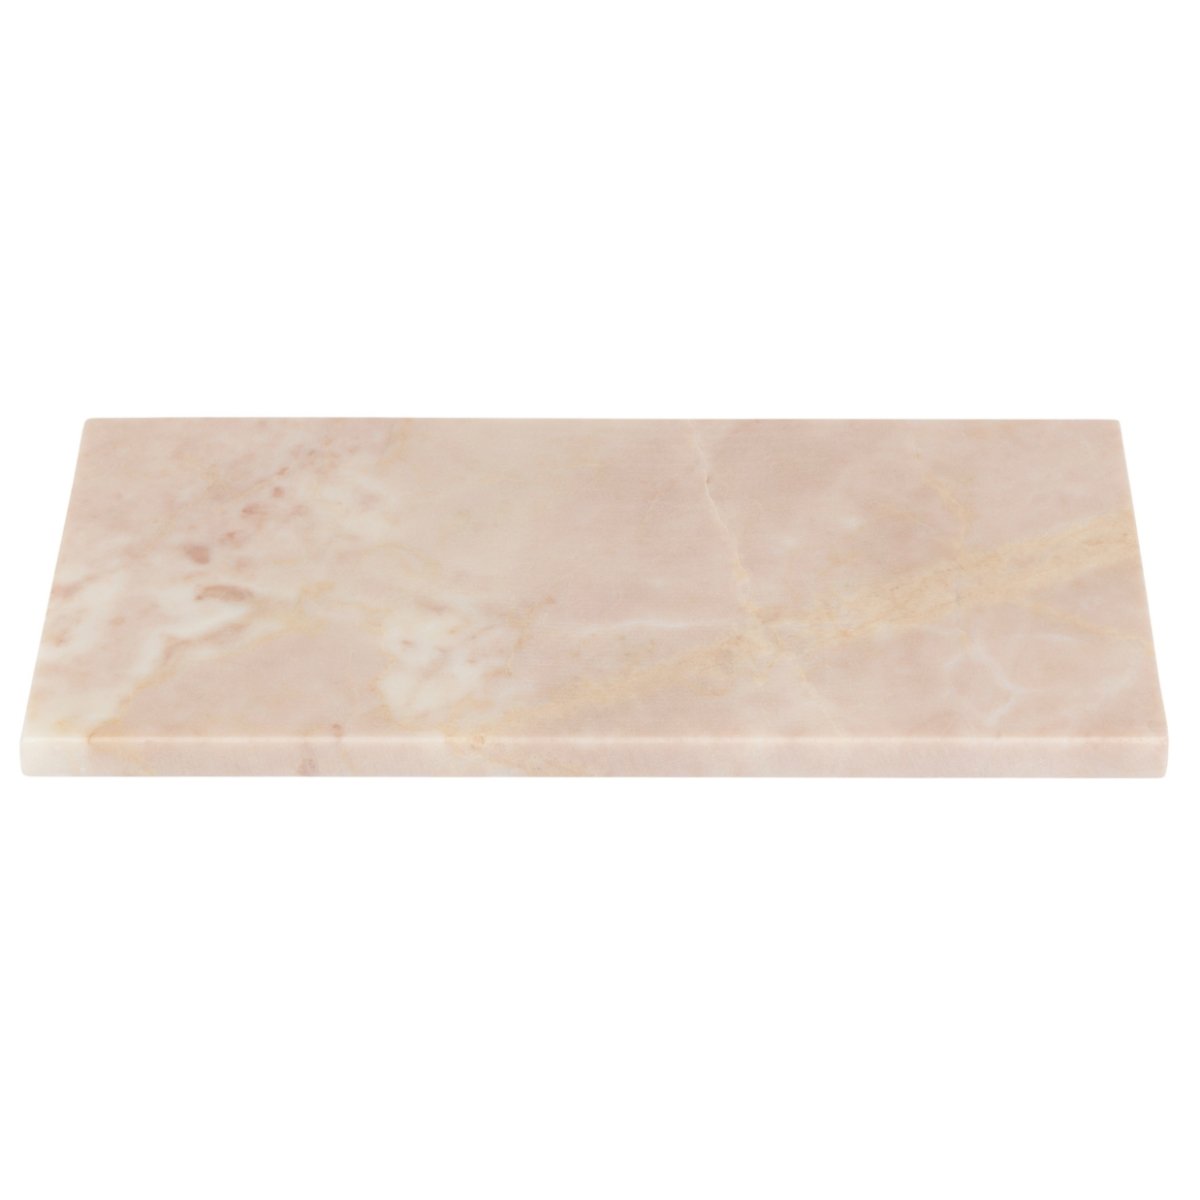 Marble Rectangular Board S - Homebody Denver